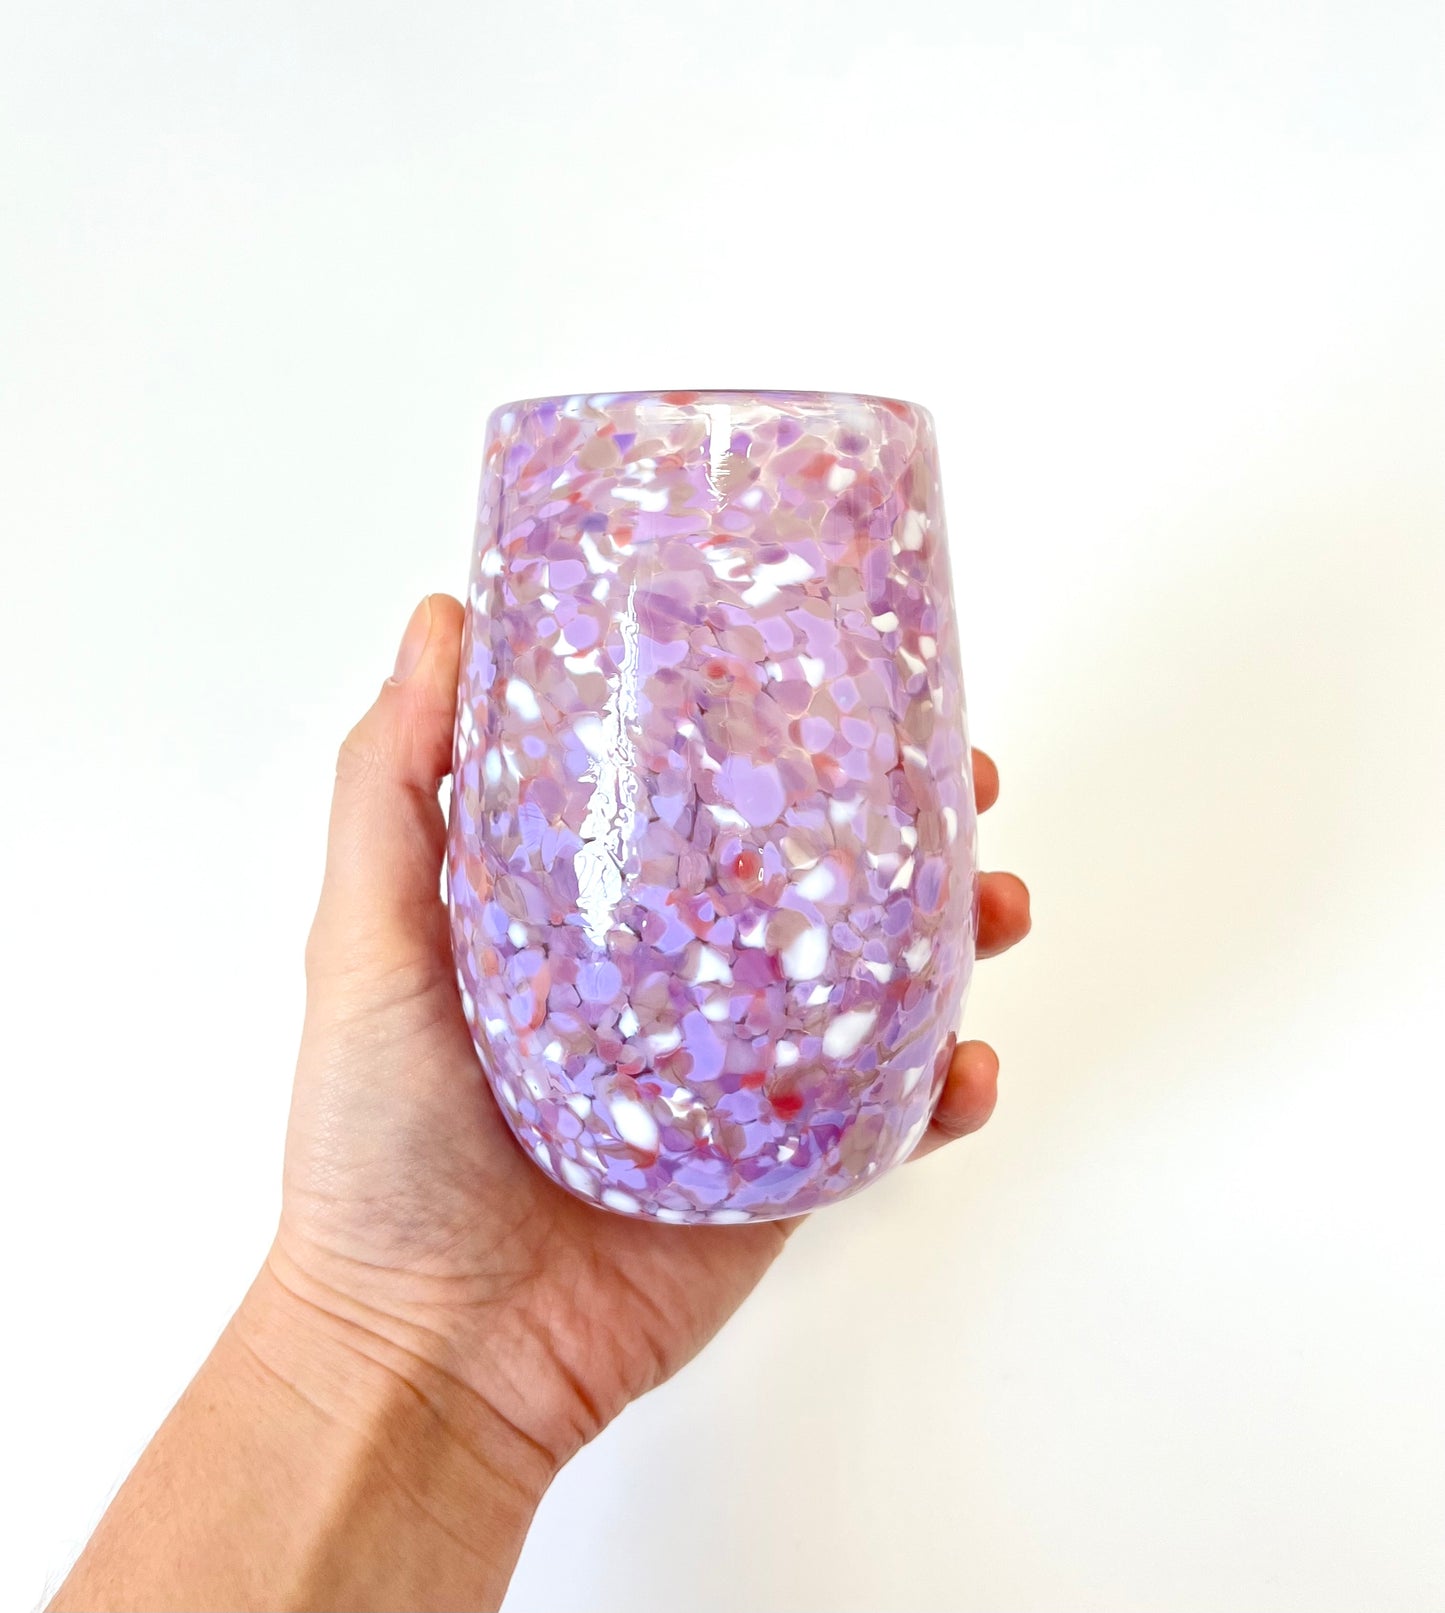 Handblown Glass Tumbler - Lilac